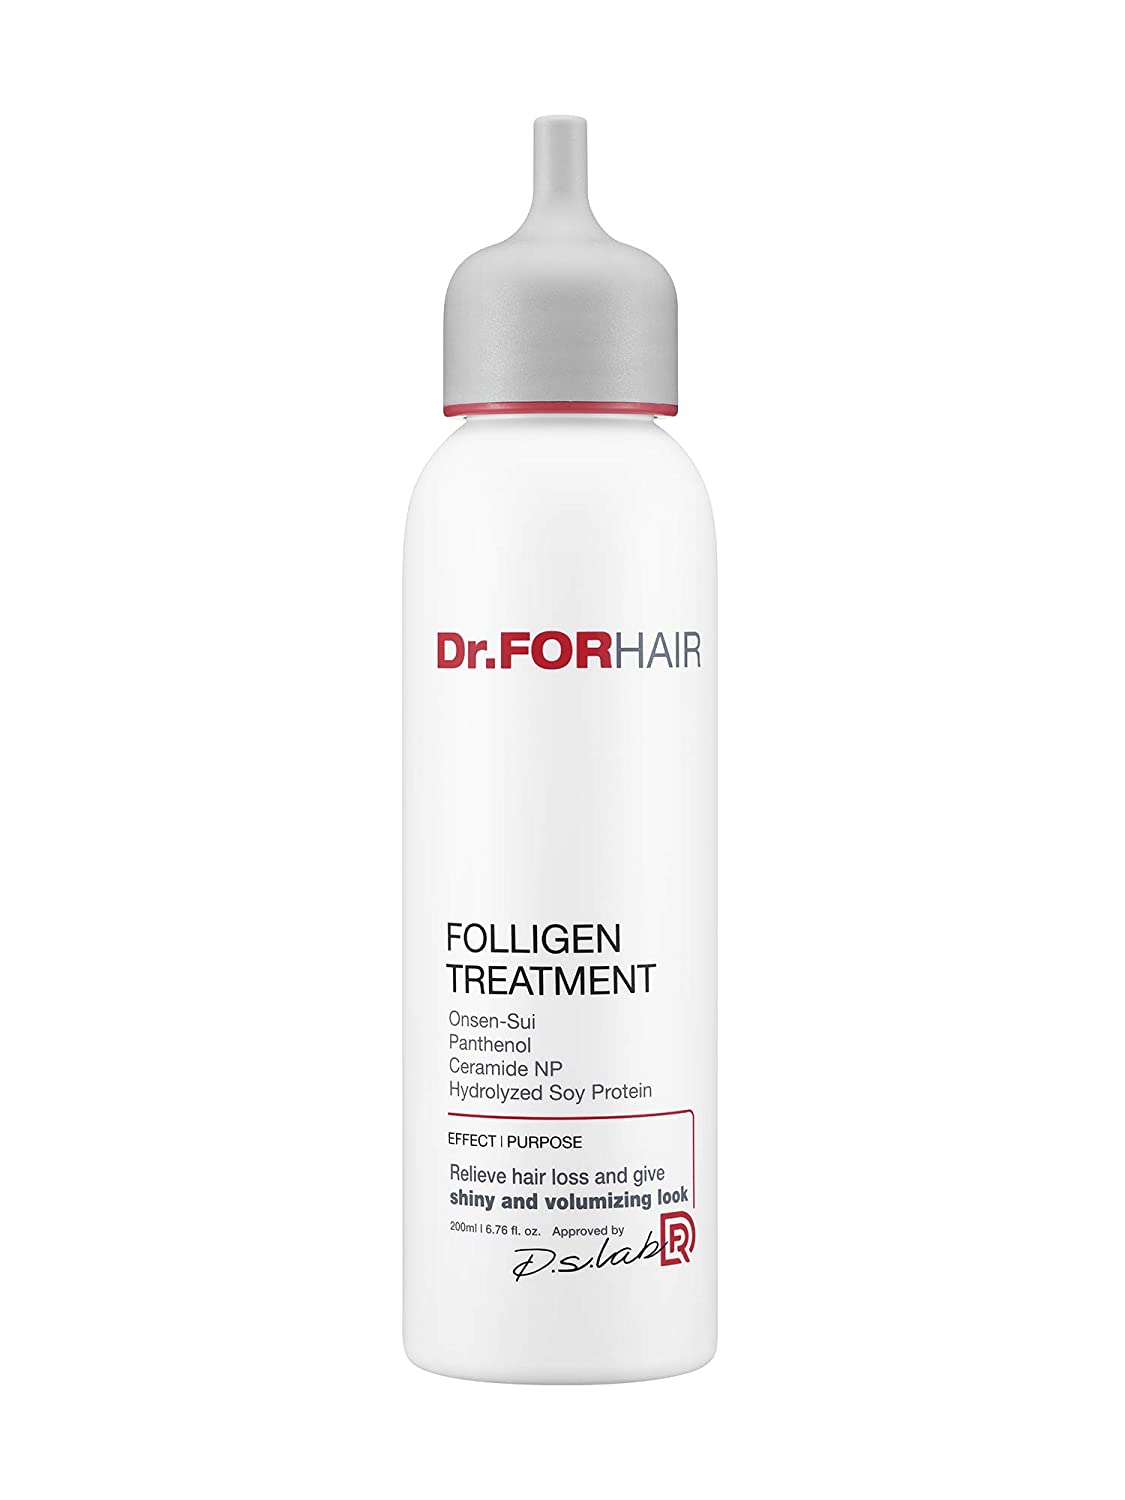 Dr.FORHAIR Folligen Treatment 200ml / 6.76 fl. oz (New Version) - eCosmeticWorld